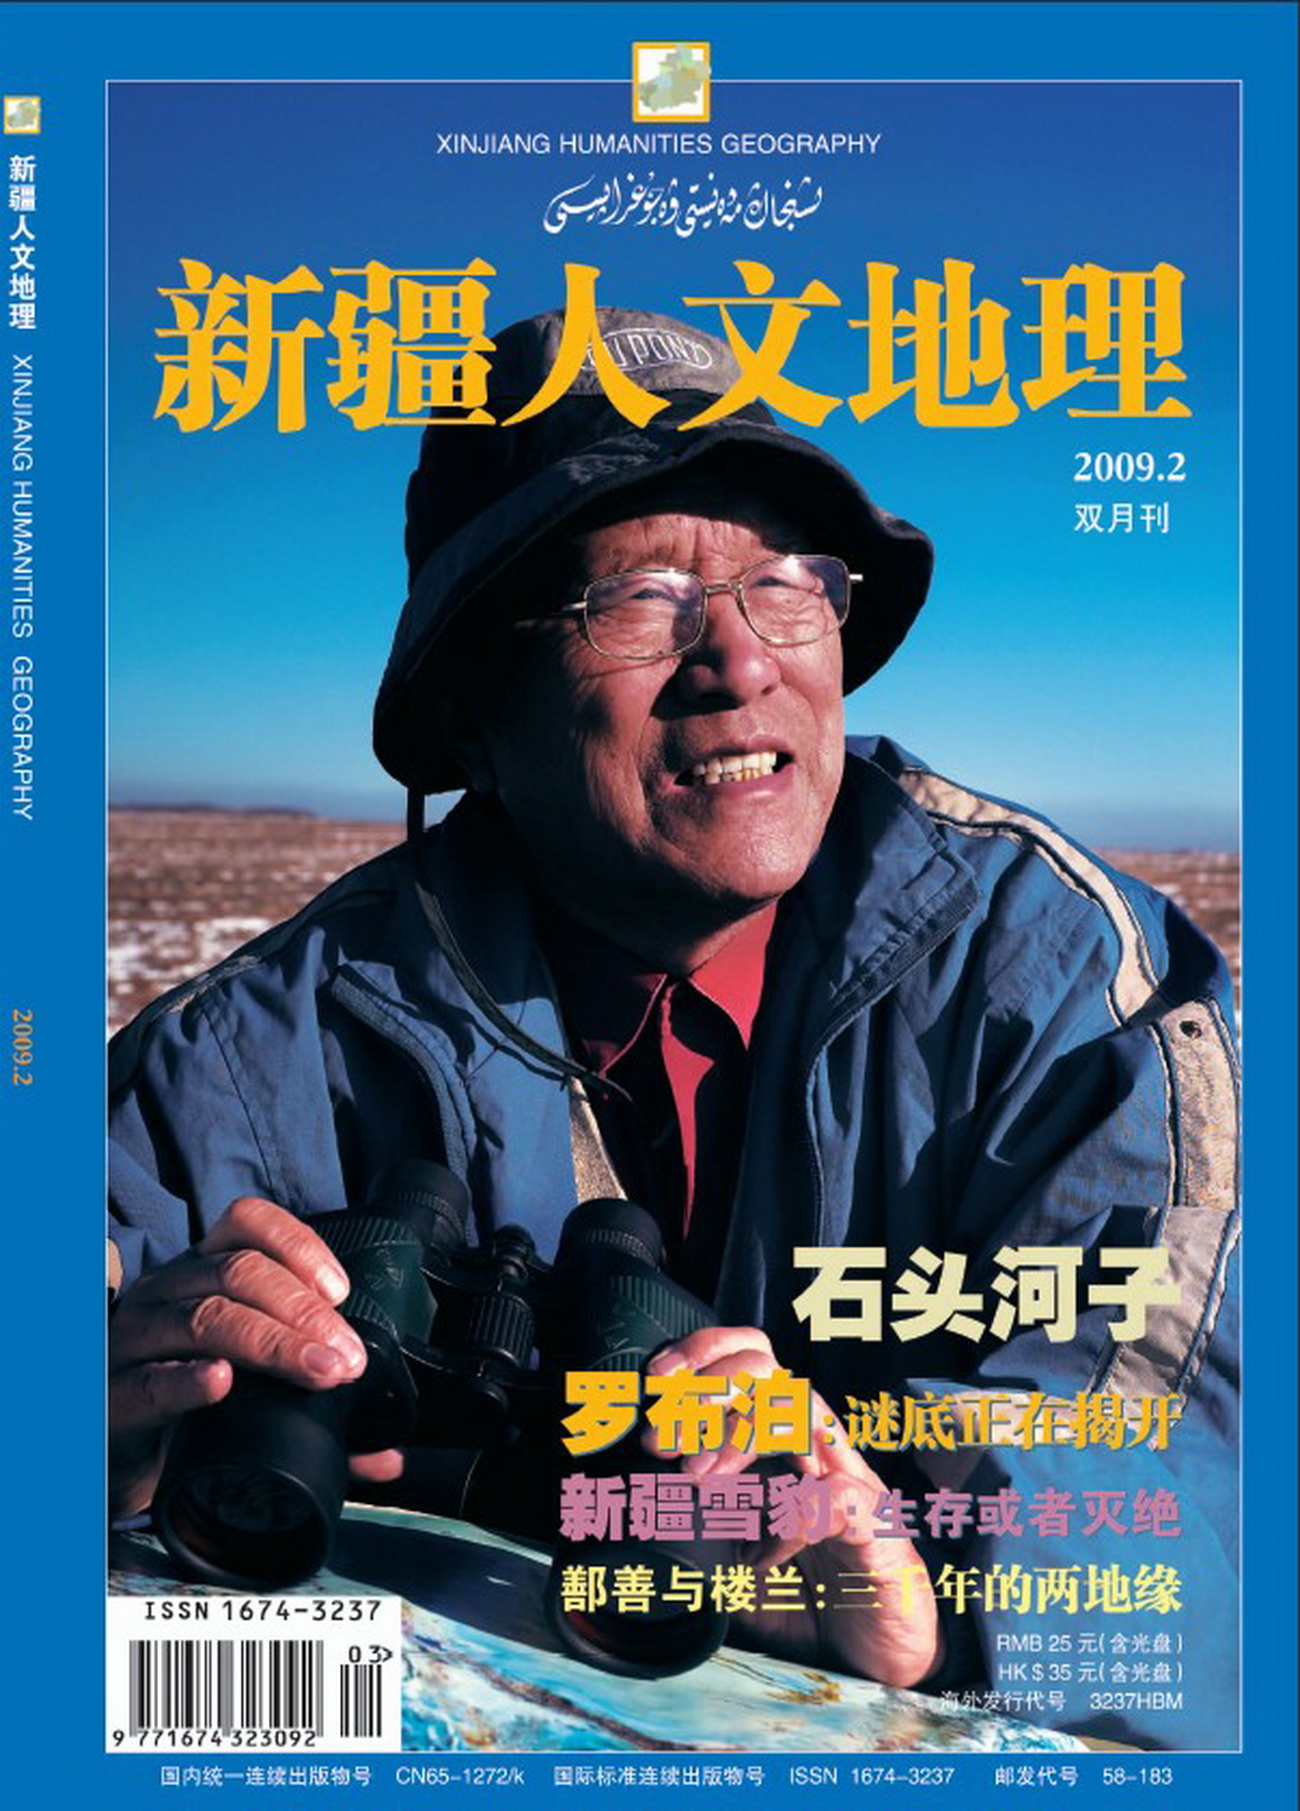 《新疆人文地理》2009年第2期电子刊